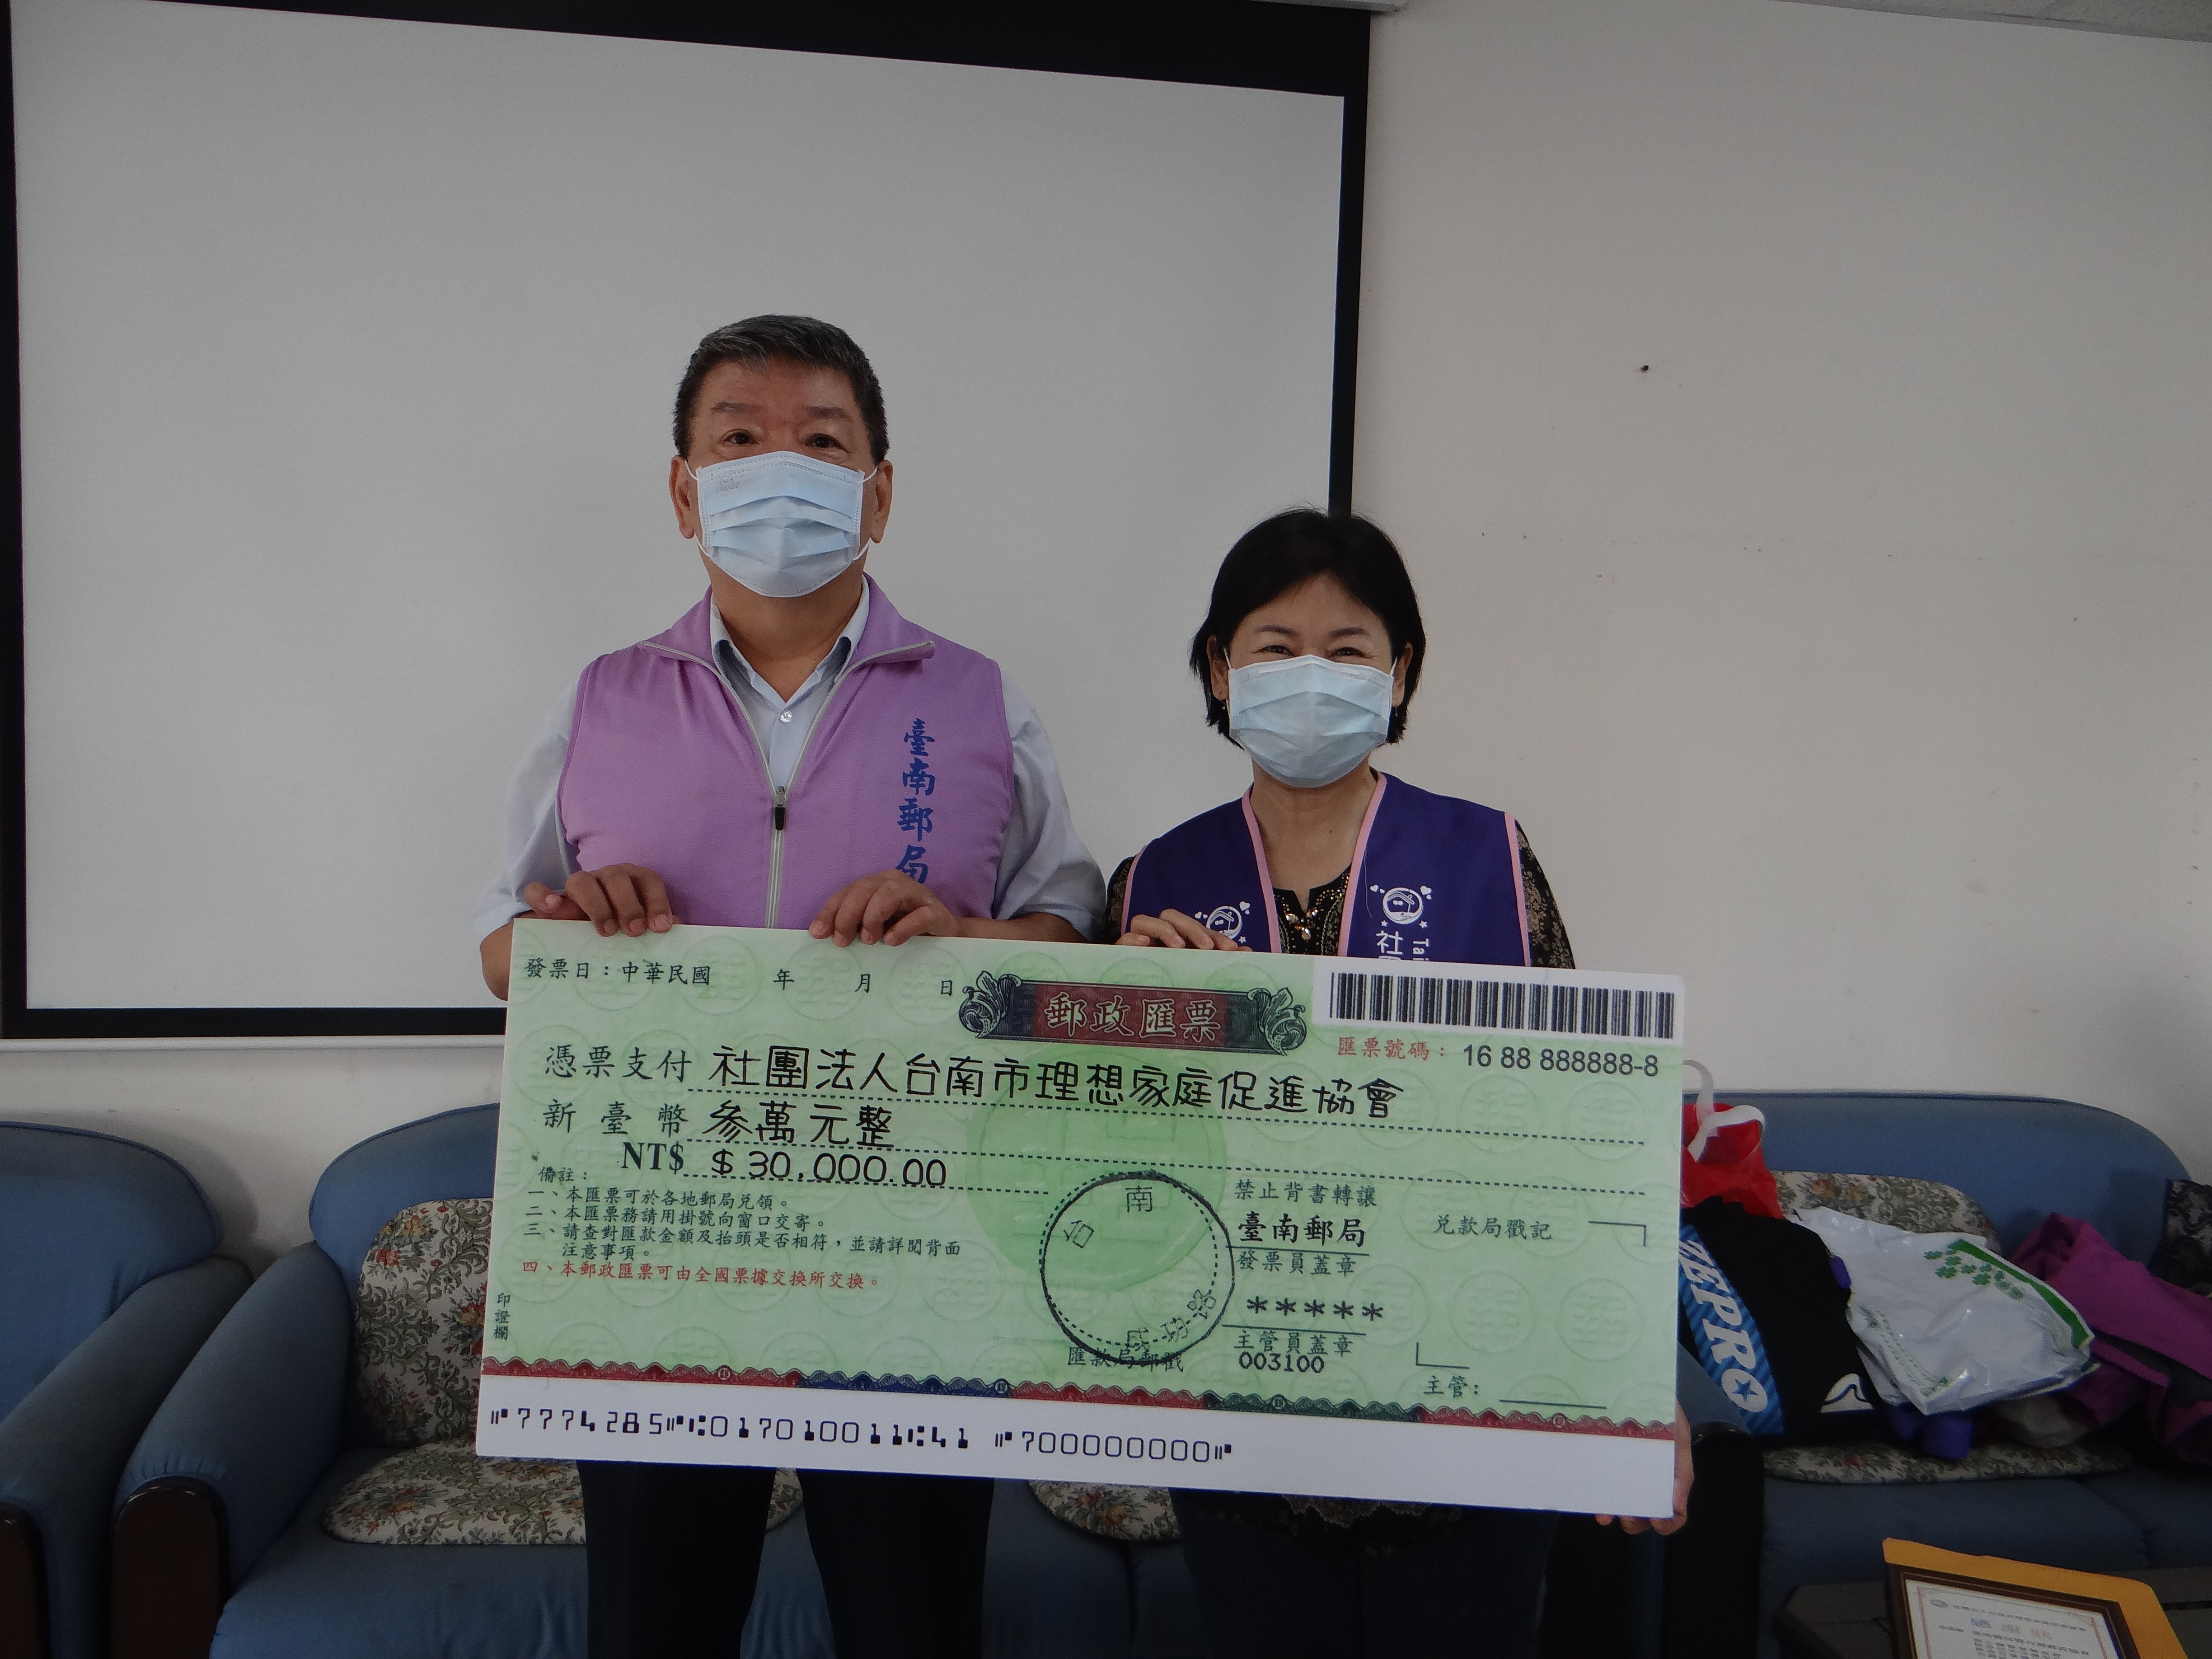 臺南郵局行銷芒果做公益捐助台南市理想家庭促進協會 